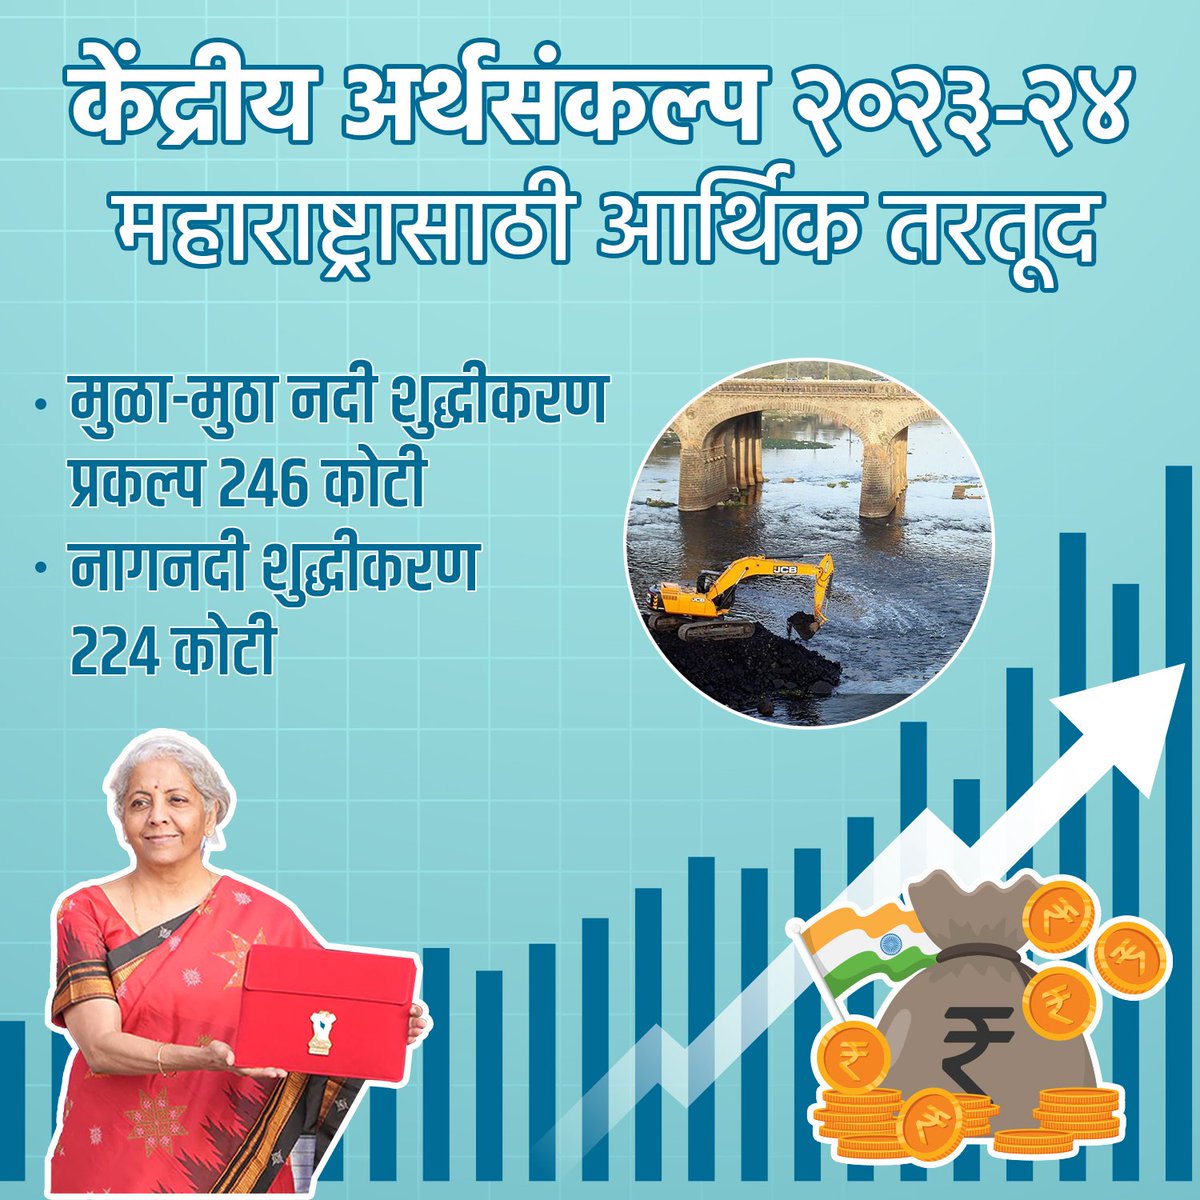 नदी शुद्धीकरण निधी
.
.
#Budget2023 #BudgetSession2023 #Budget #riverpurification #mulamuthariver #naagriver #funds  #maharashtratoday #Maharashtra